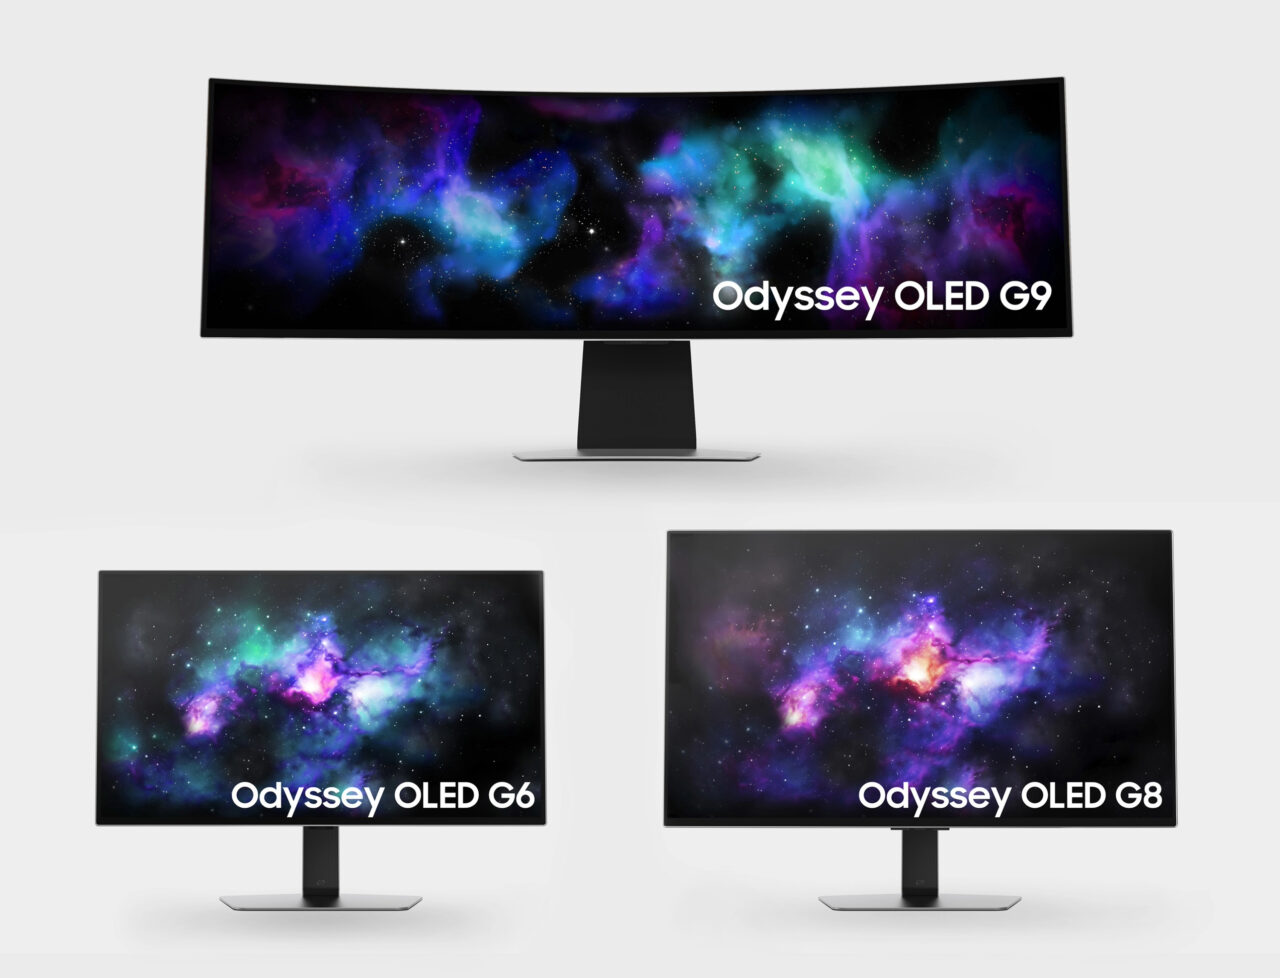 Trzy monitory z serii Odyssey OLED - G9, G6, G8, na każdym wyświetlony kosmiczny pejzaż.